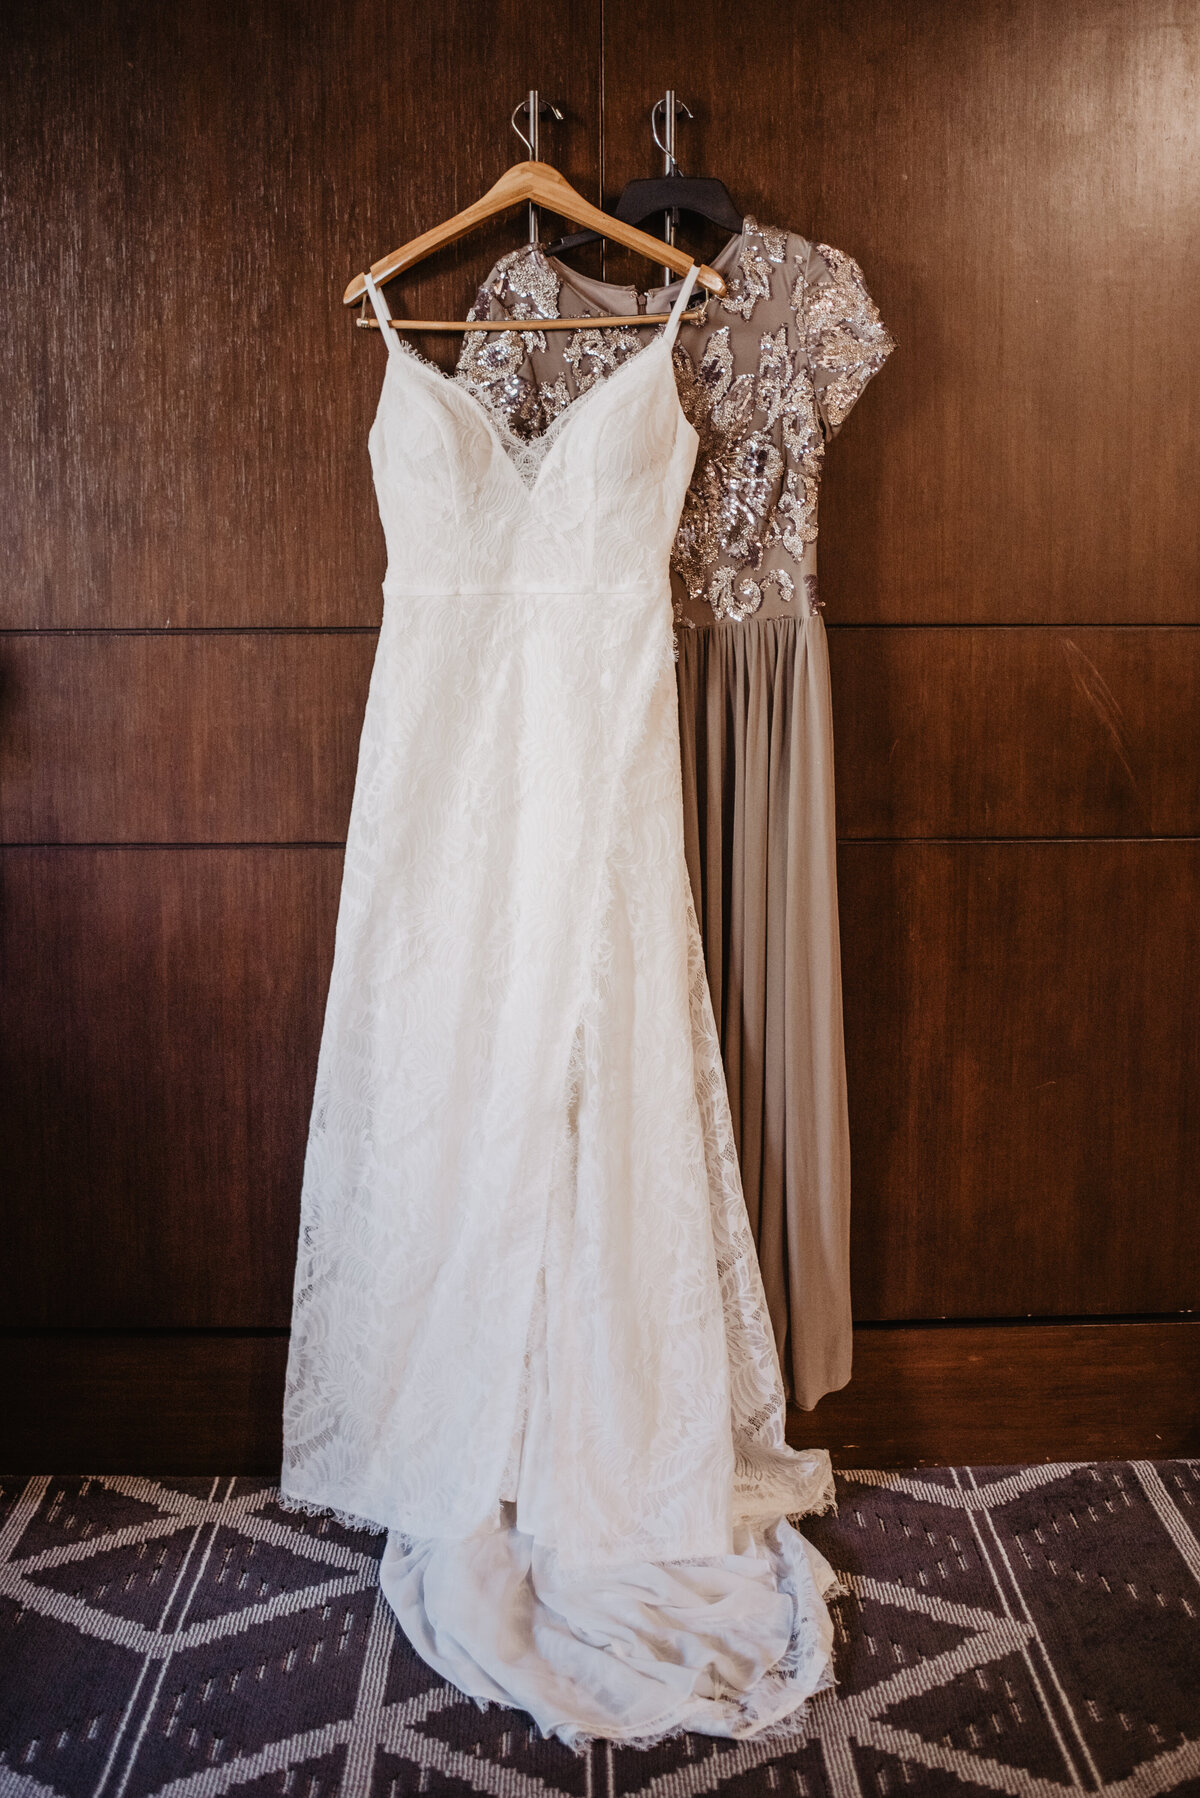 Photographers Jackson Hole capture wedding dress hanging